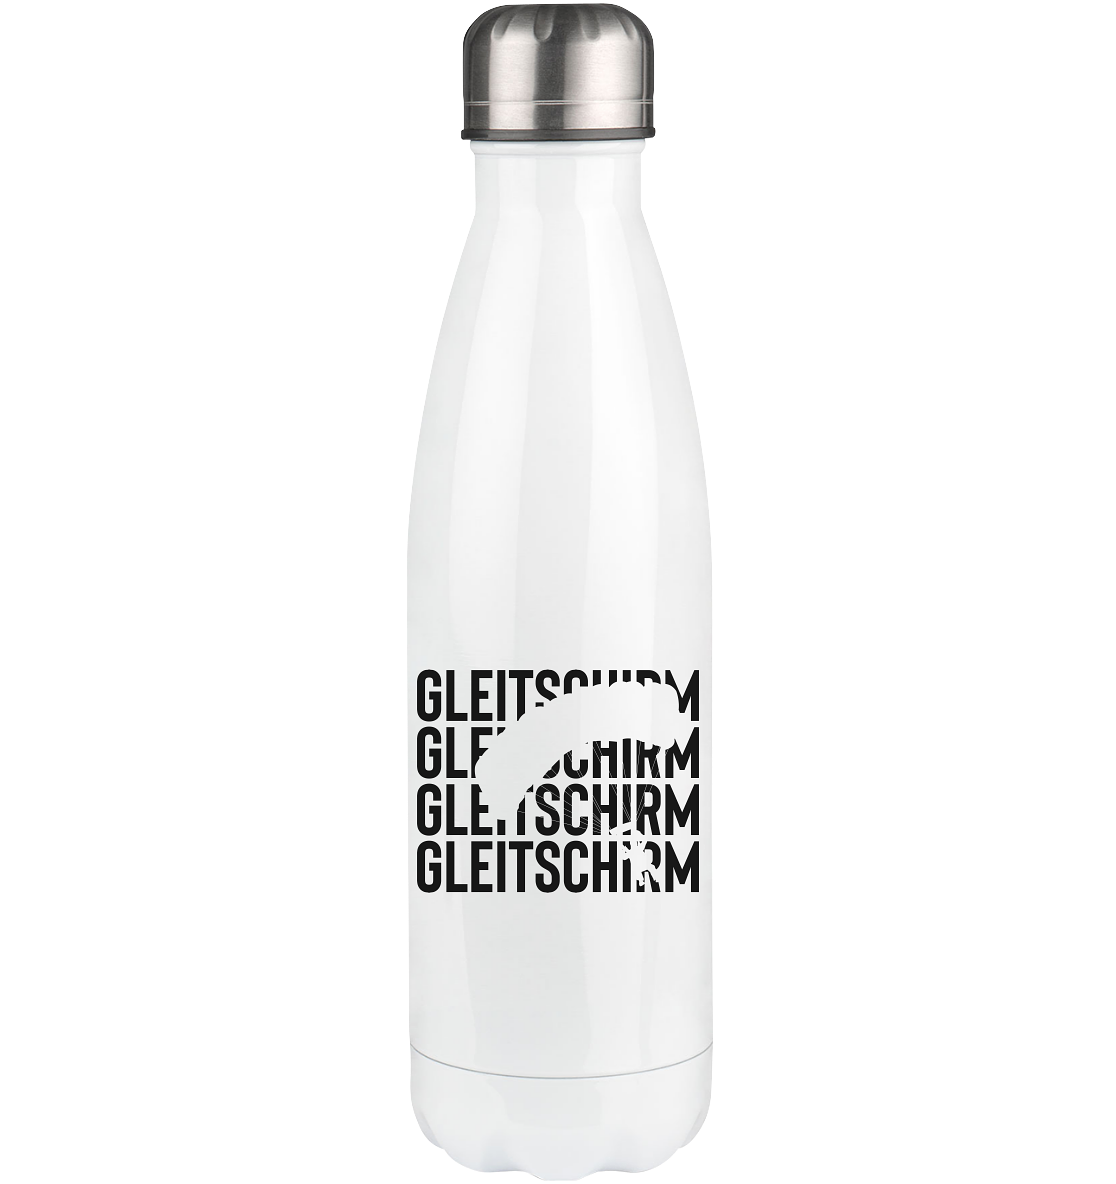 Gleitschirm - Edelstahl Thermosflasche berge 500ml